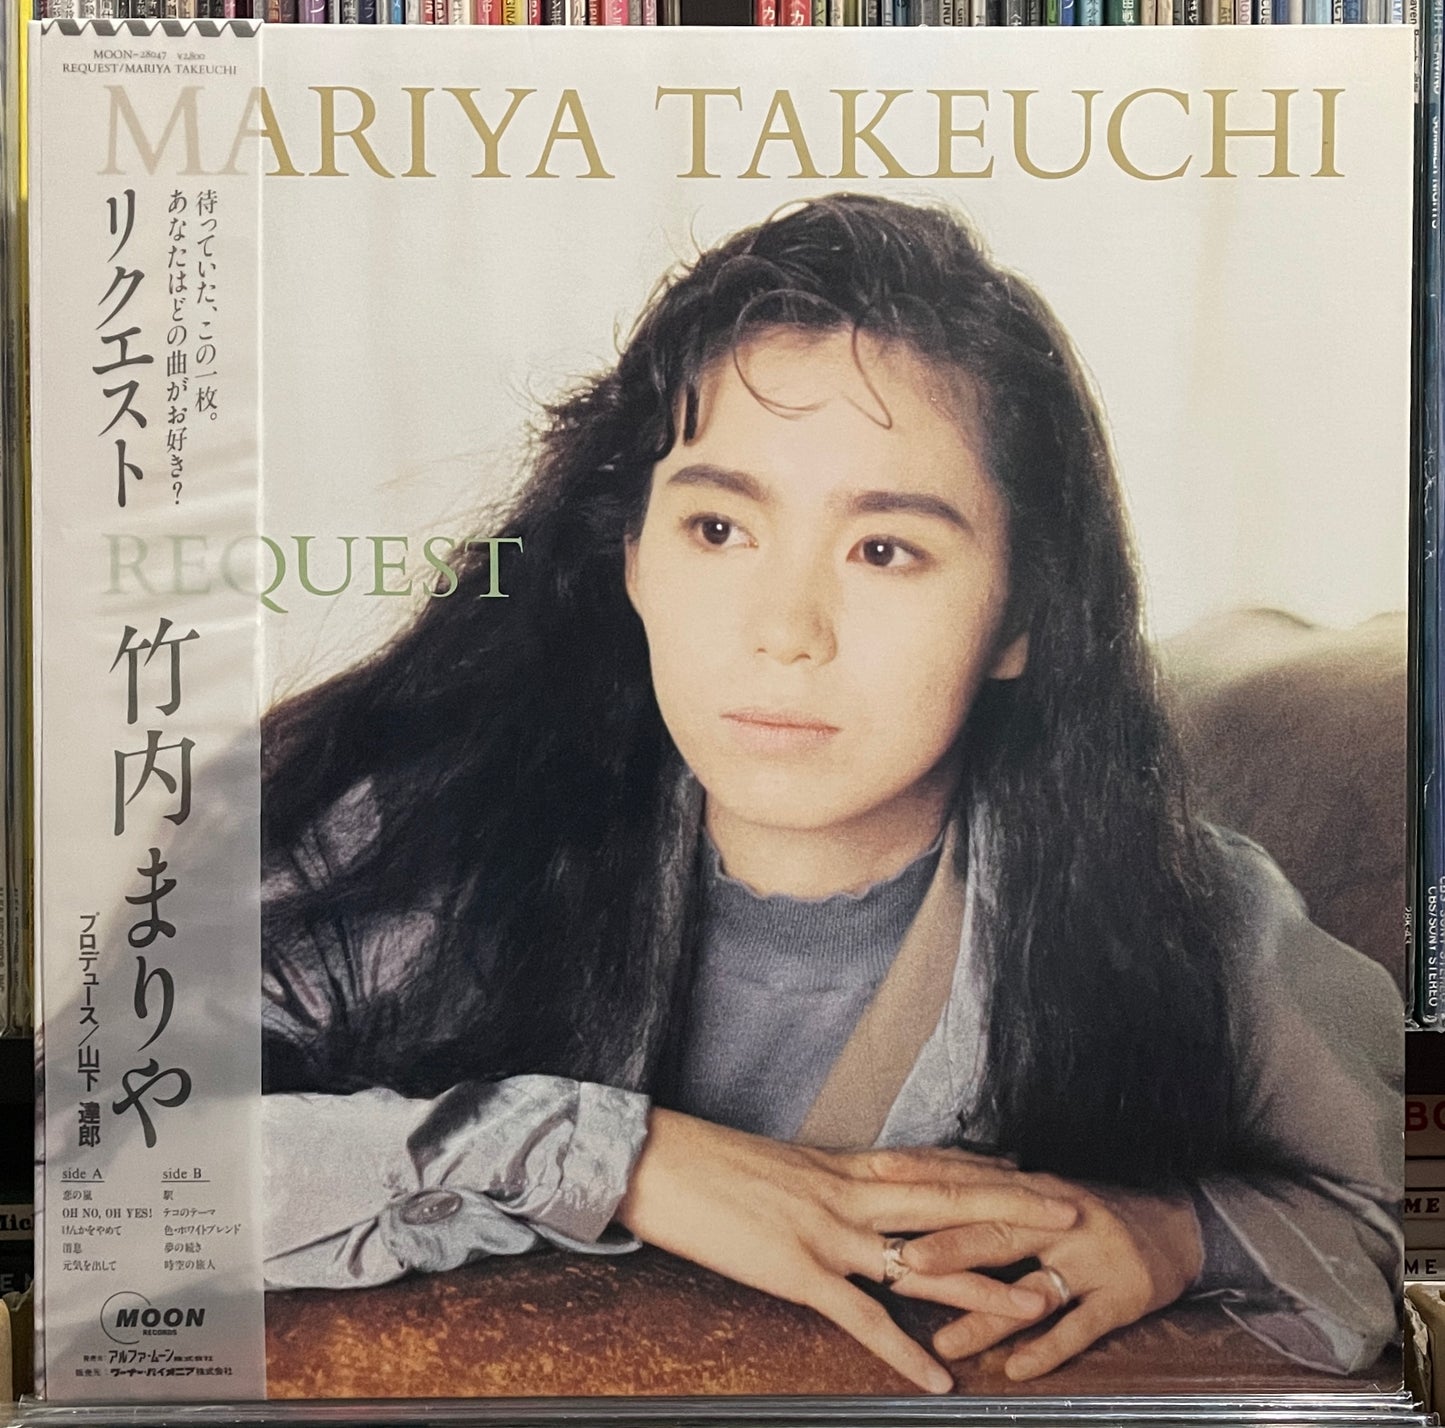 Mariya Takeuchi “Request” (1987)